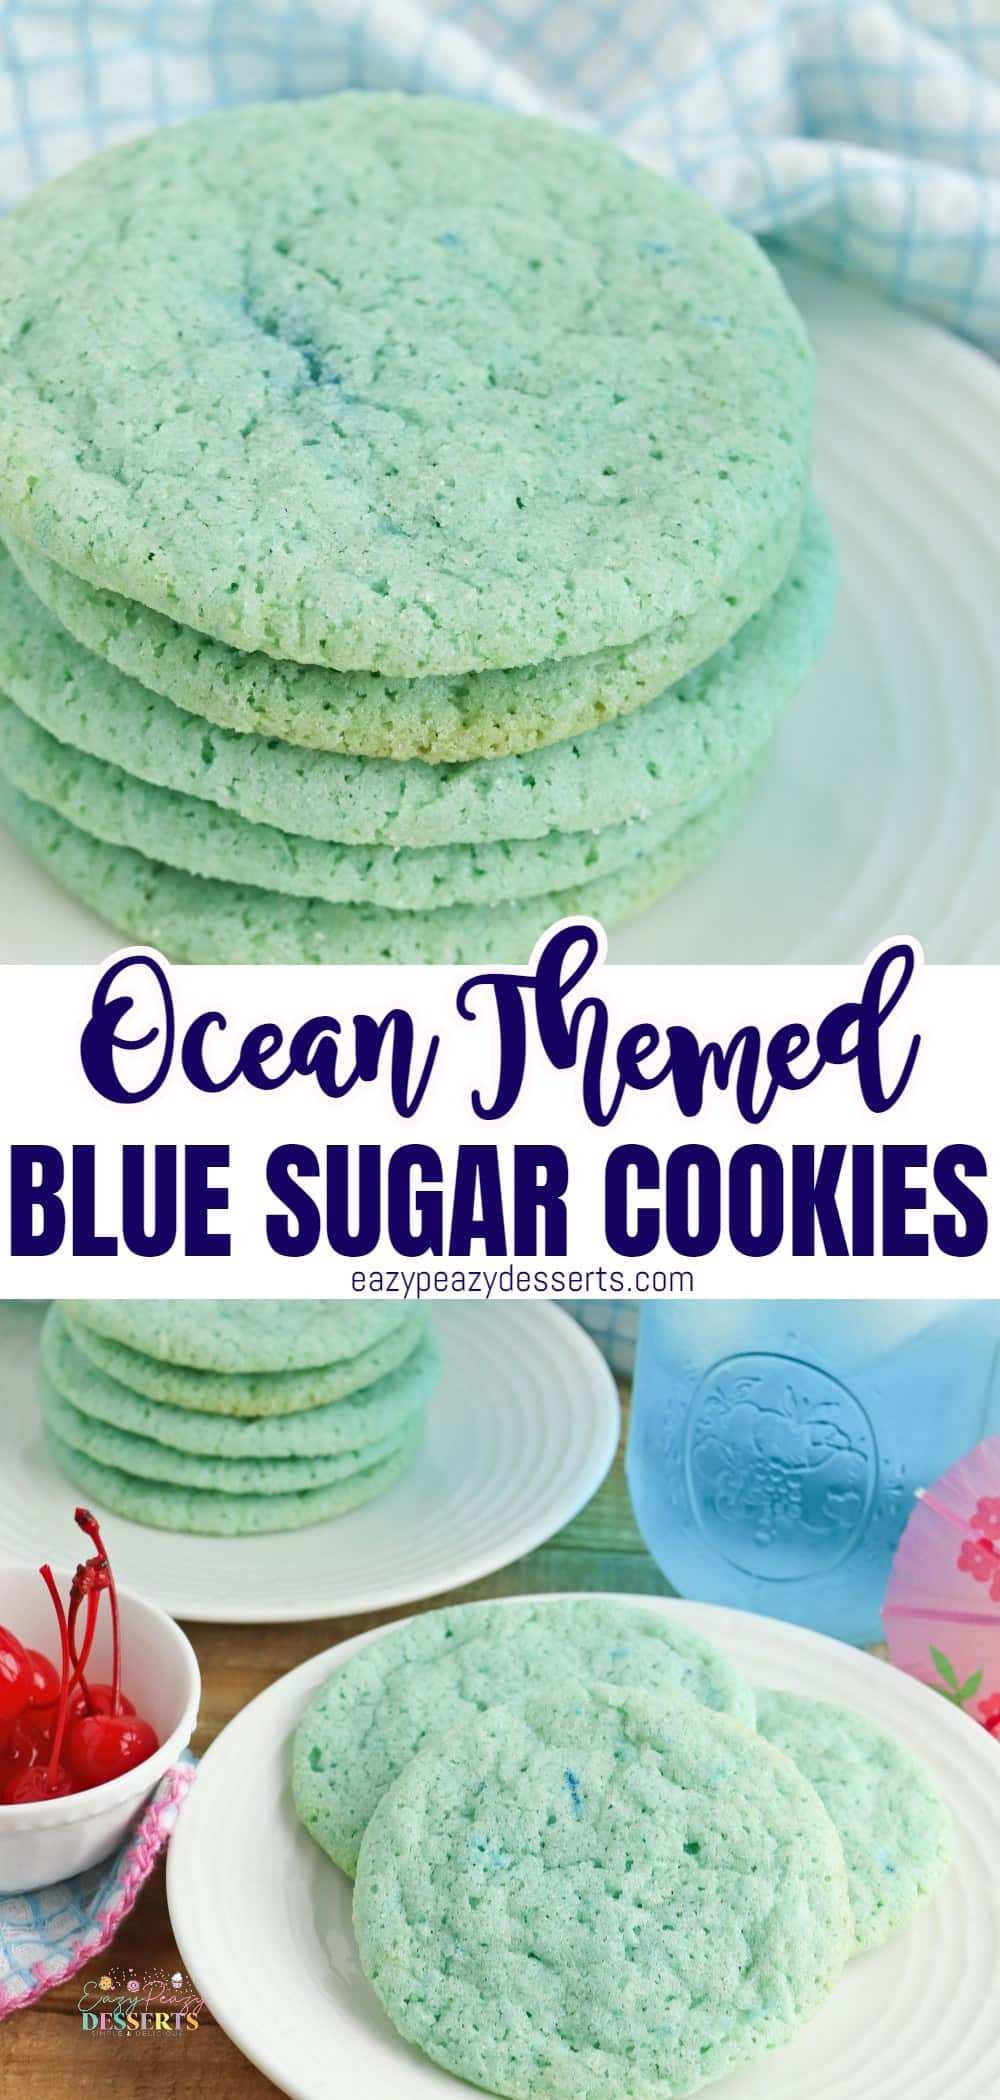 Blue sugar cookies